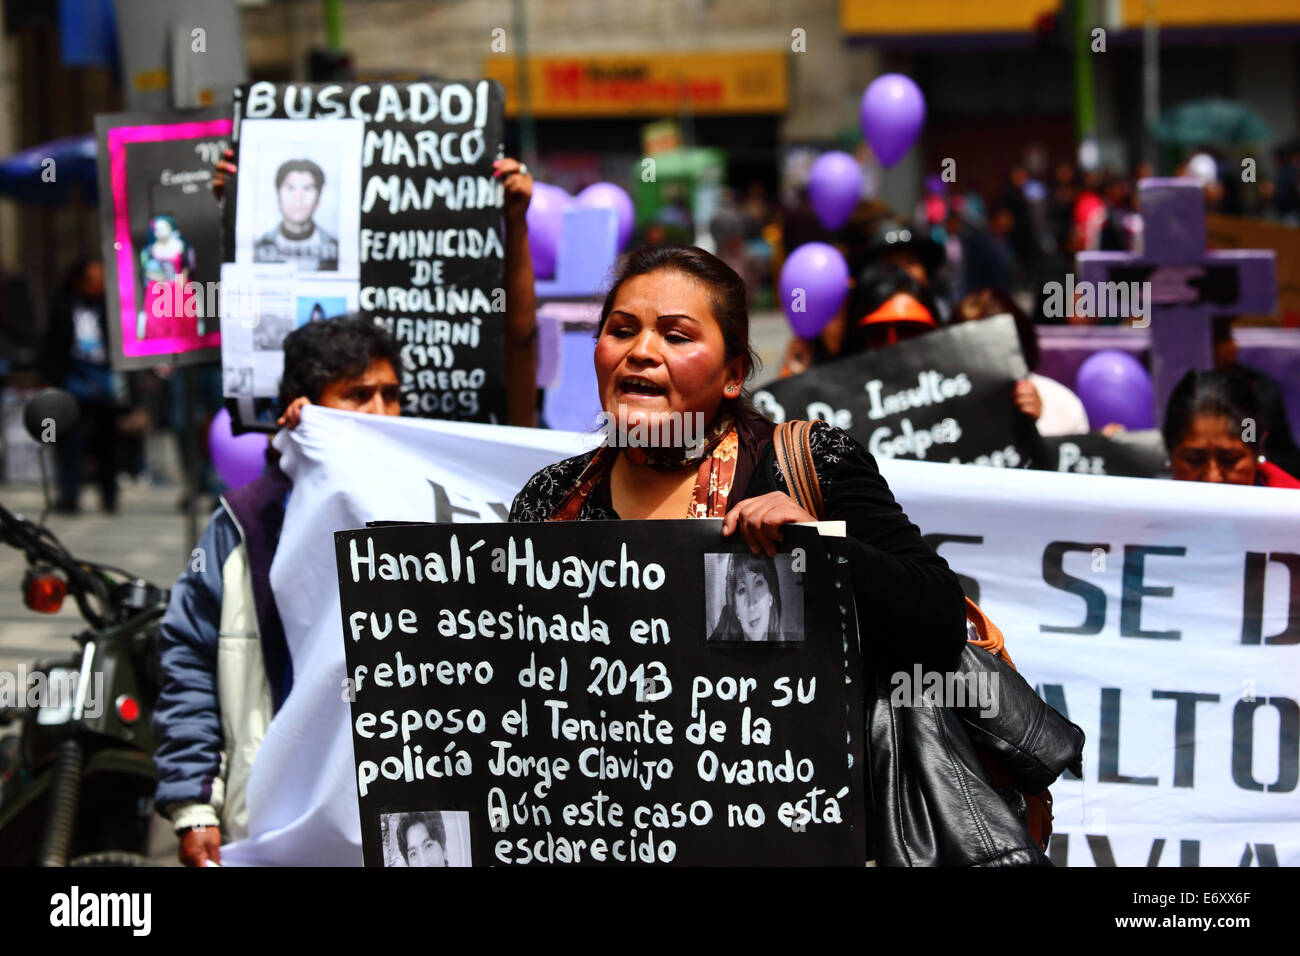 La Paz, Bolivien, 1. September 2014. Ein Aktivist von Frauenrechten trägt ein Plakat erinnern Hanali Huaycho während eines Marsches gegen Gewalt gegen Frauen zu protestieren. Der Marsch war auch den letzten Äußerungen von mehreren Kandidaten im aktuellen Wahlkampf, die scheinen, das Problem zu minimieren und diskriminieren Frauen zurückweise. Laut einem Bericht der WHO im Januar 2013 Bolivien ist das Land mit der höchsten Rate der Gewalt gegen Frauen in Lateinamerika, wurden seit 2006 453 Fälle von Frauenmorde in der aktuellen Regierung. Bildnachweis: James Brunker/Alamy Live-Nachrichten Stockfoto